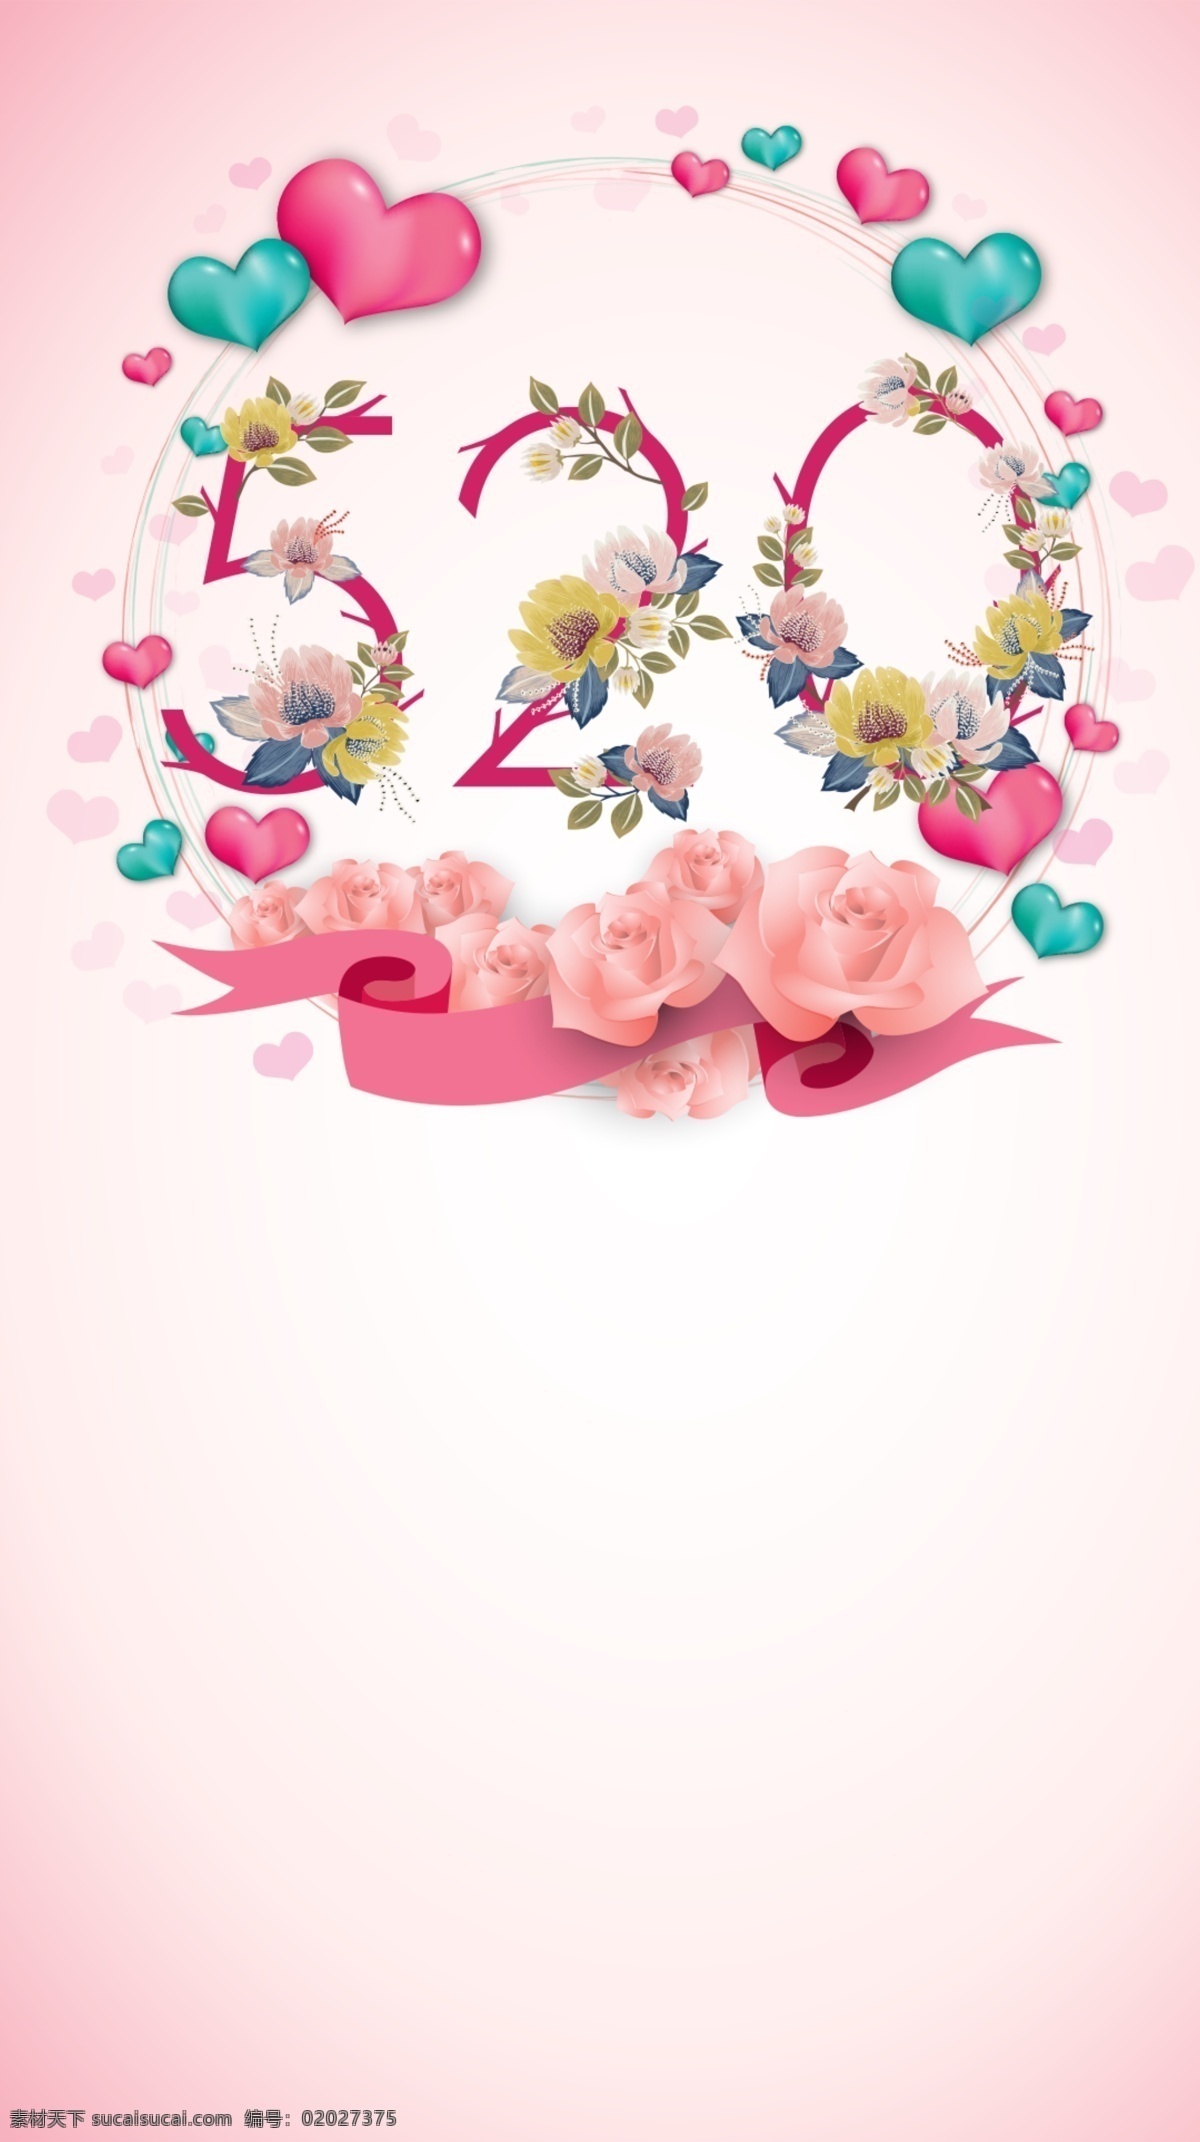 520 粉红色 花朵 气球 爱心 背景 礼物 情人节 商业 小清新 520情人节 玫瑰 文艺 简约